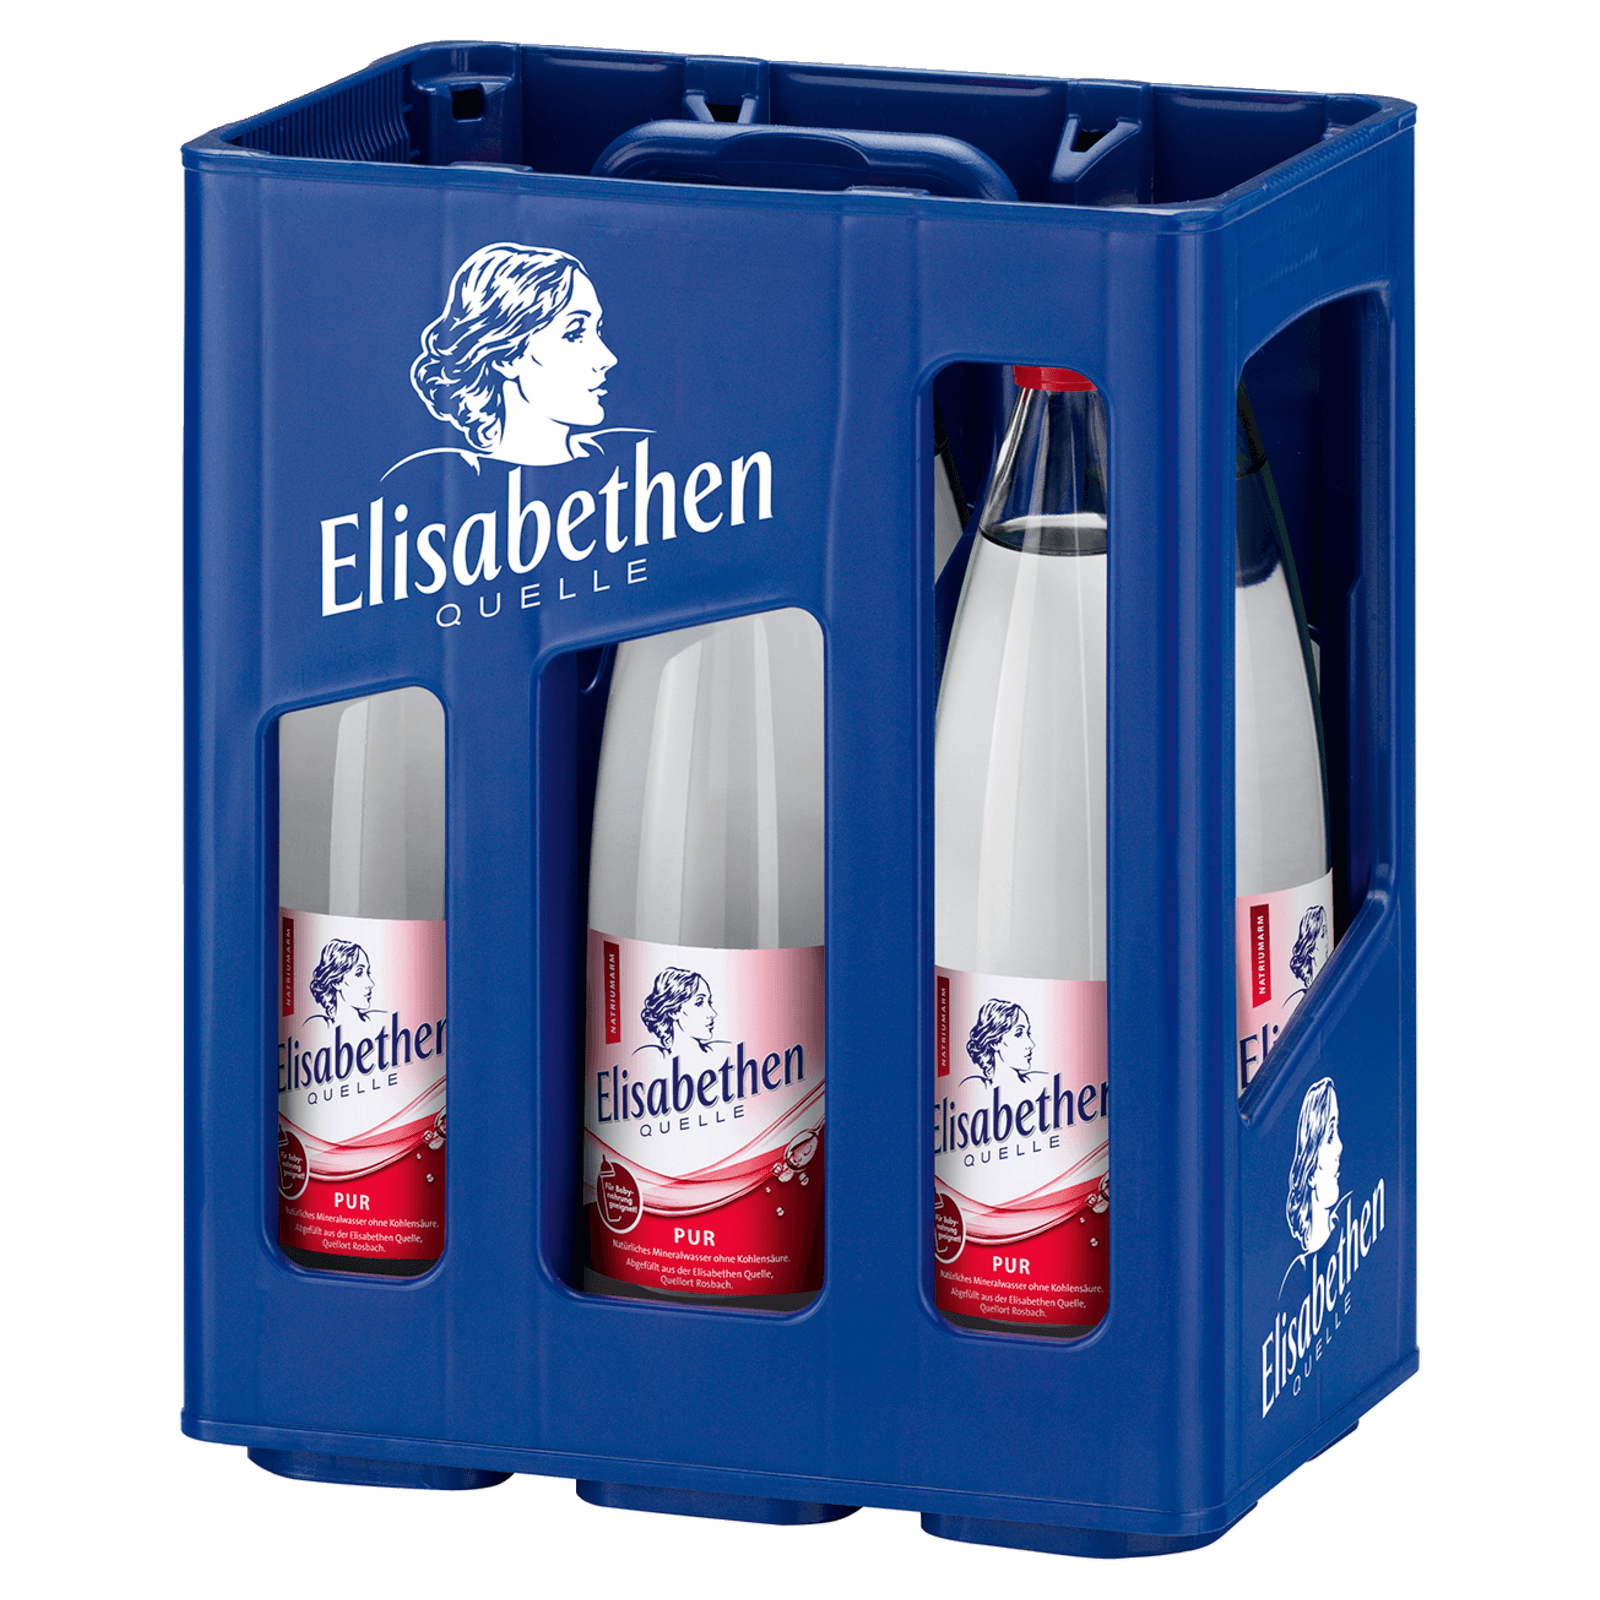 Elisabethen Quelle Mineralwasser Pur 6x1l  für 5.79 EUR